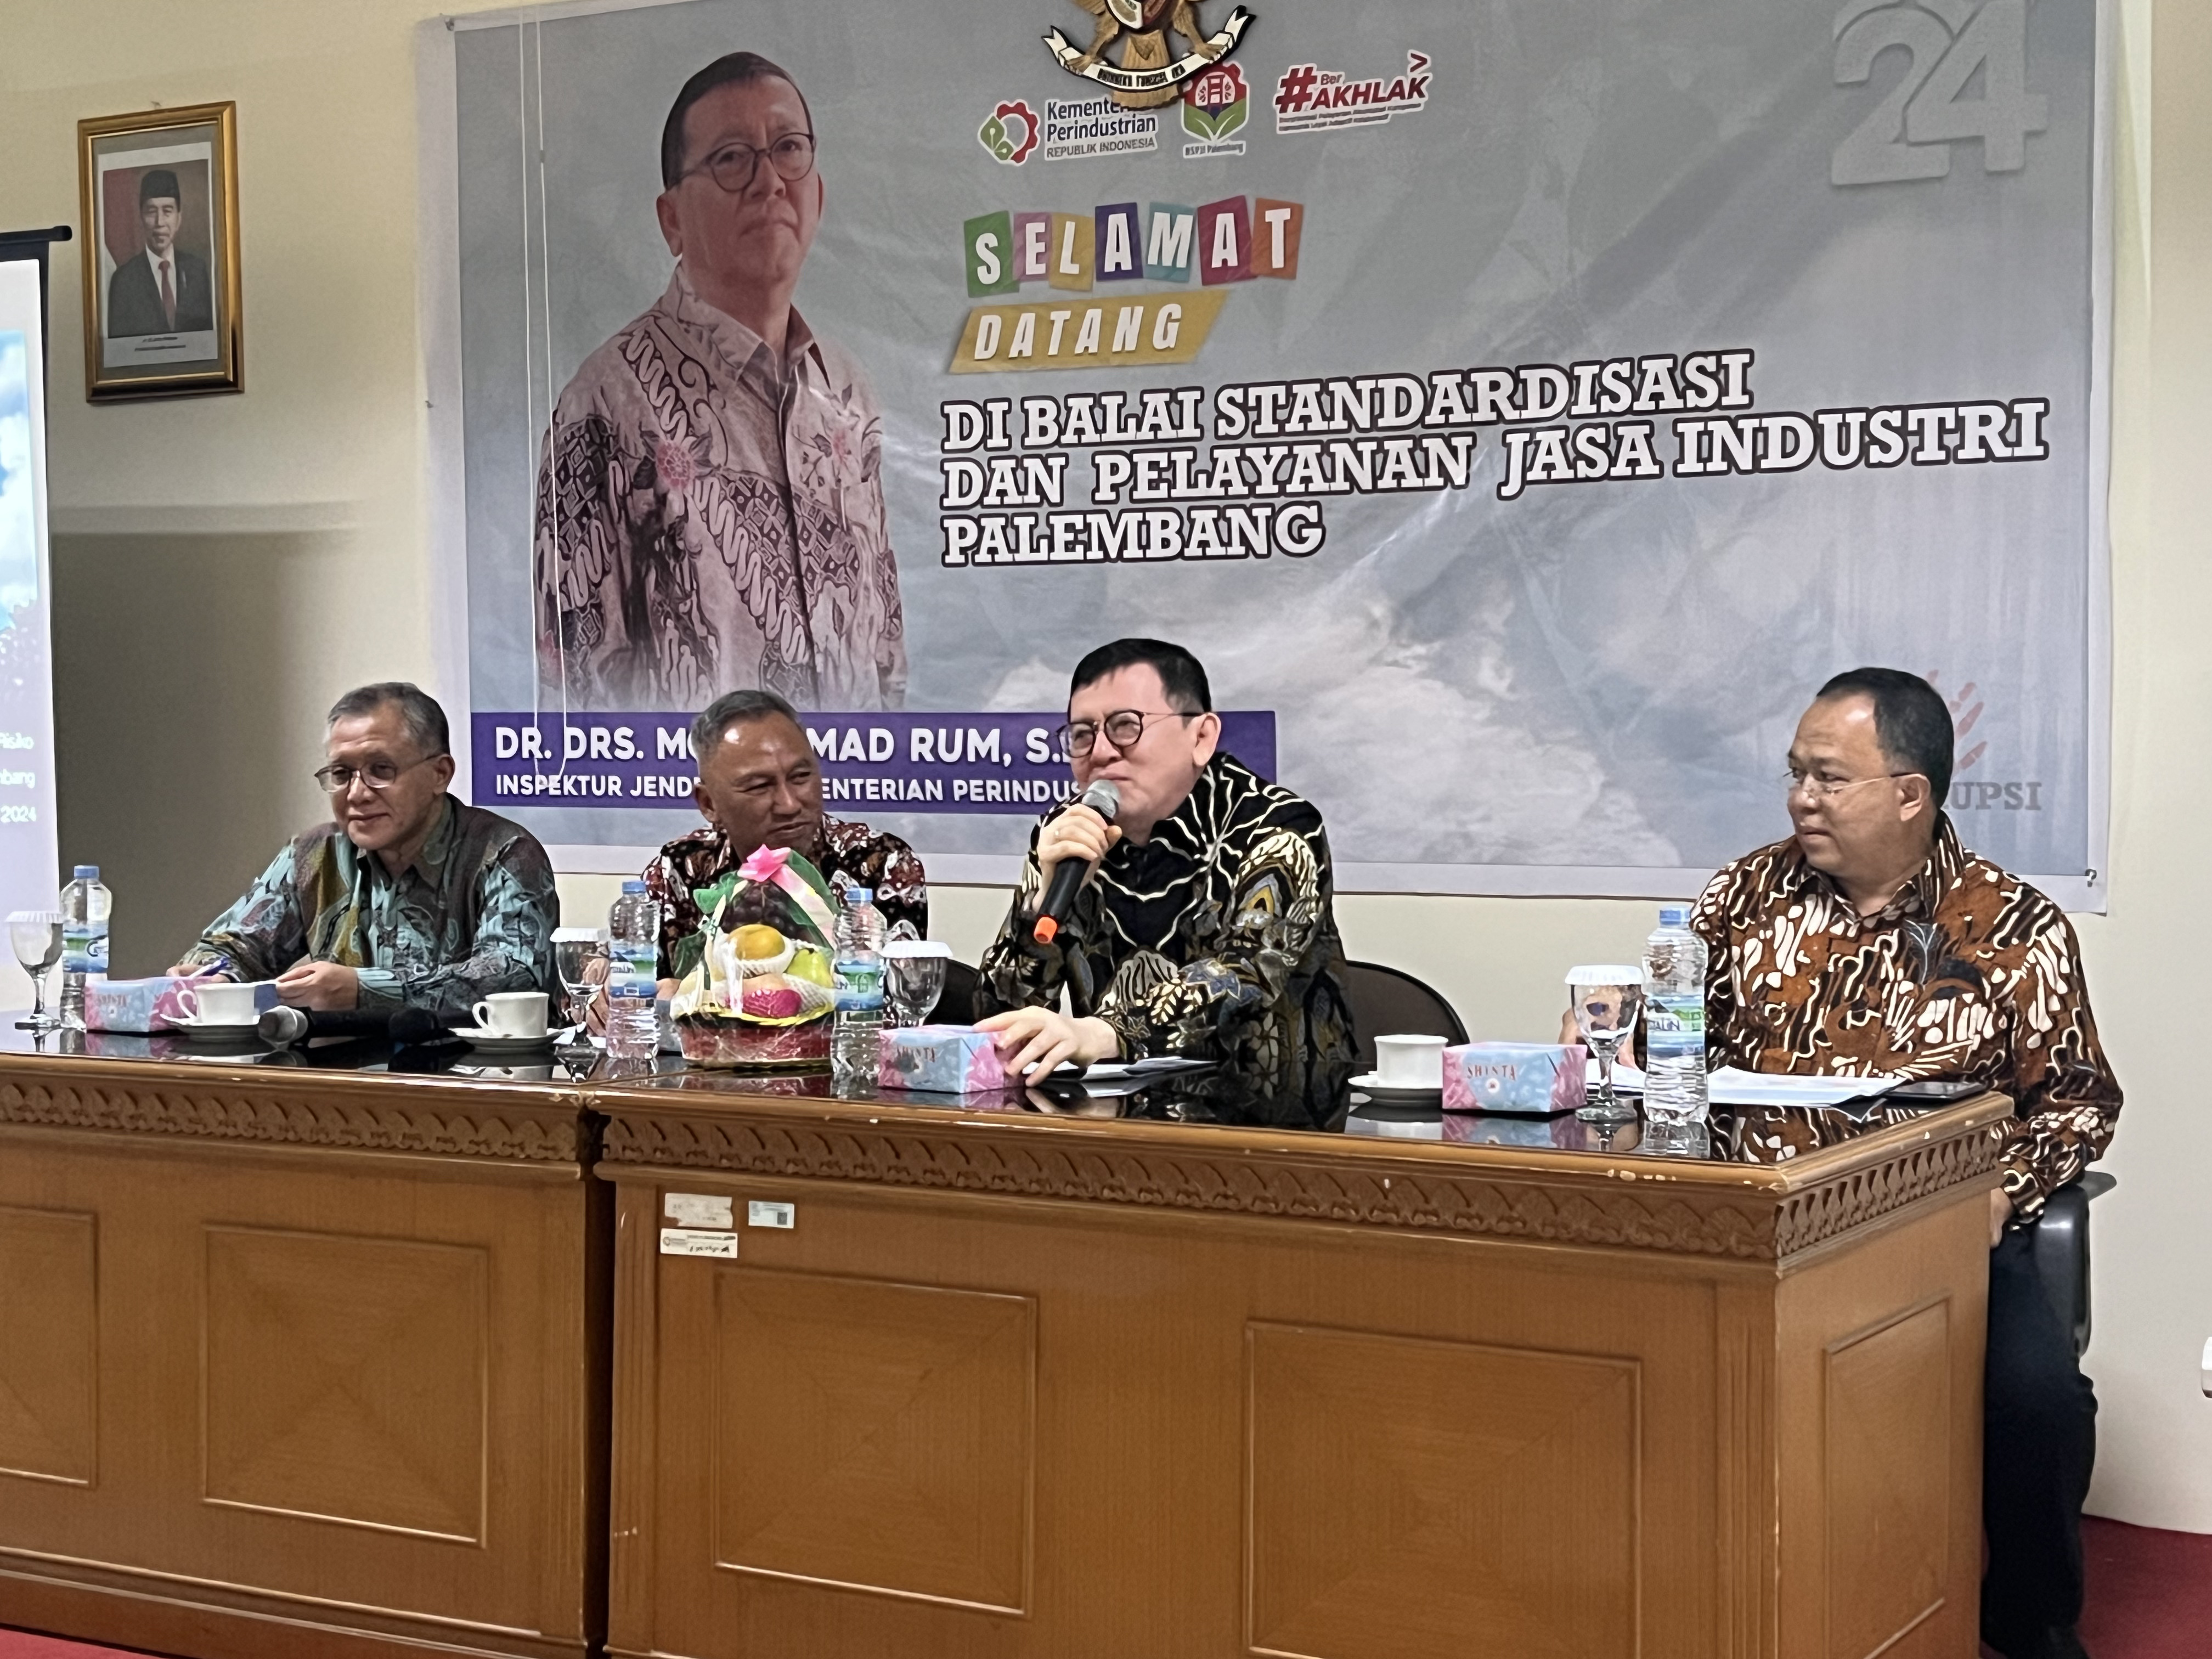 Perkembangan Jasa Pelayanan Teknis dan Pendampingan atas Manajemen Risiko pada Satker BSPJI Palembang